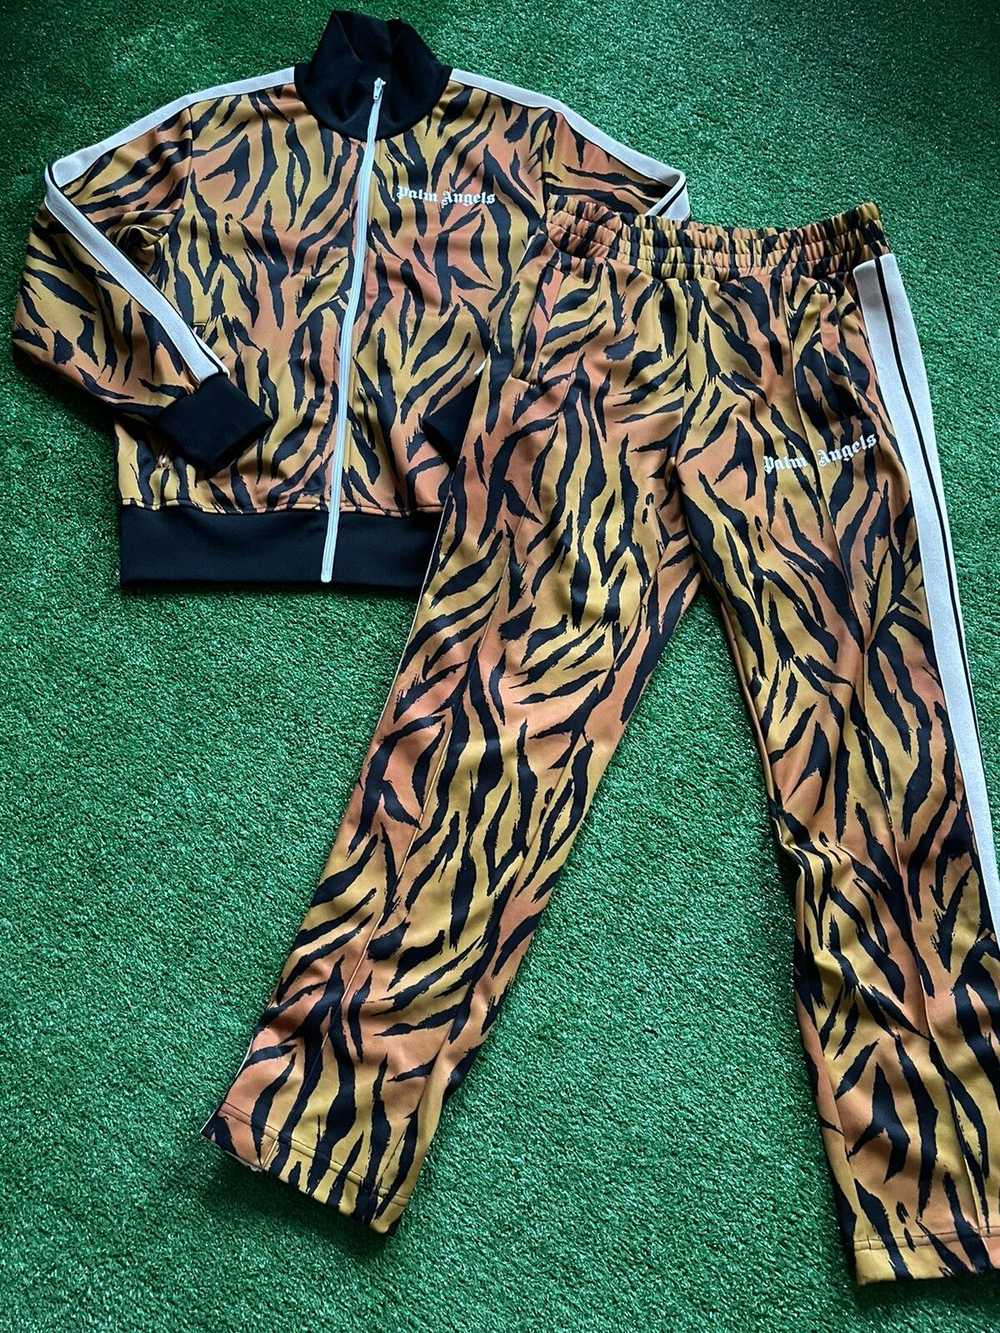 Palm Angels tiger suit - image 3